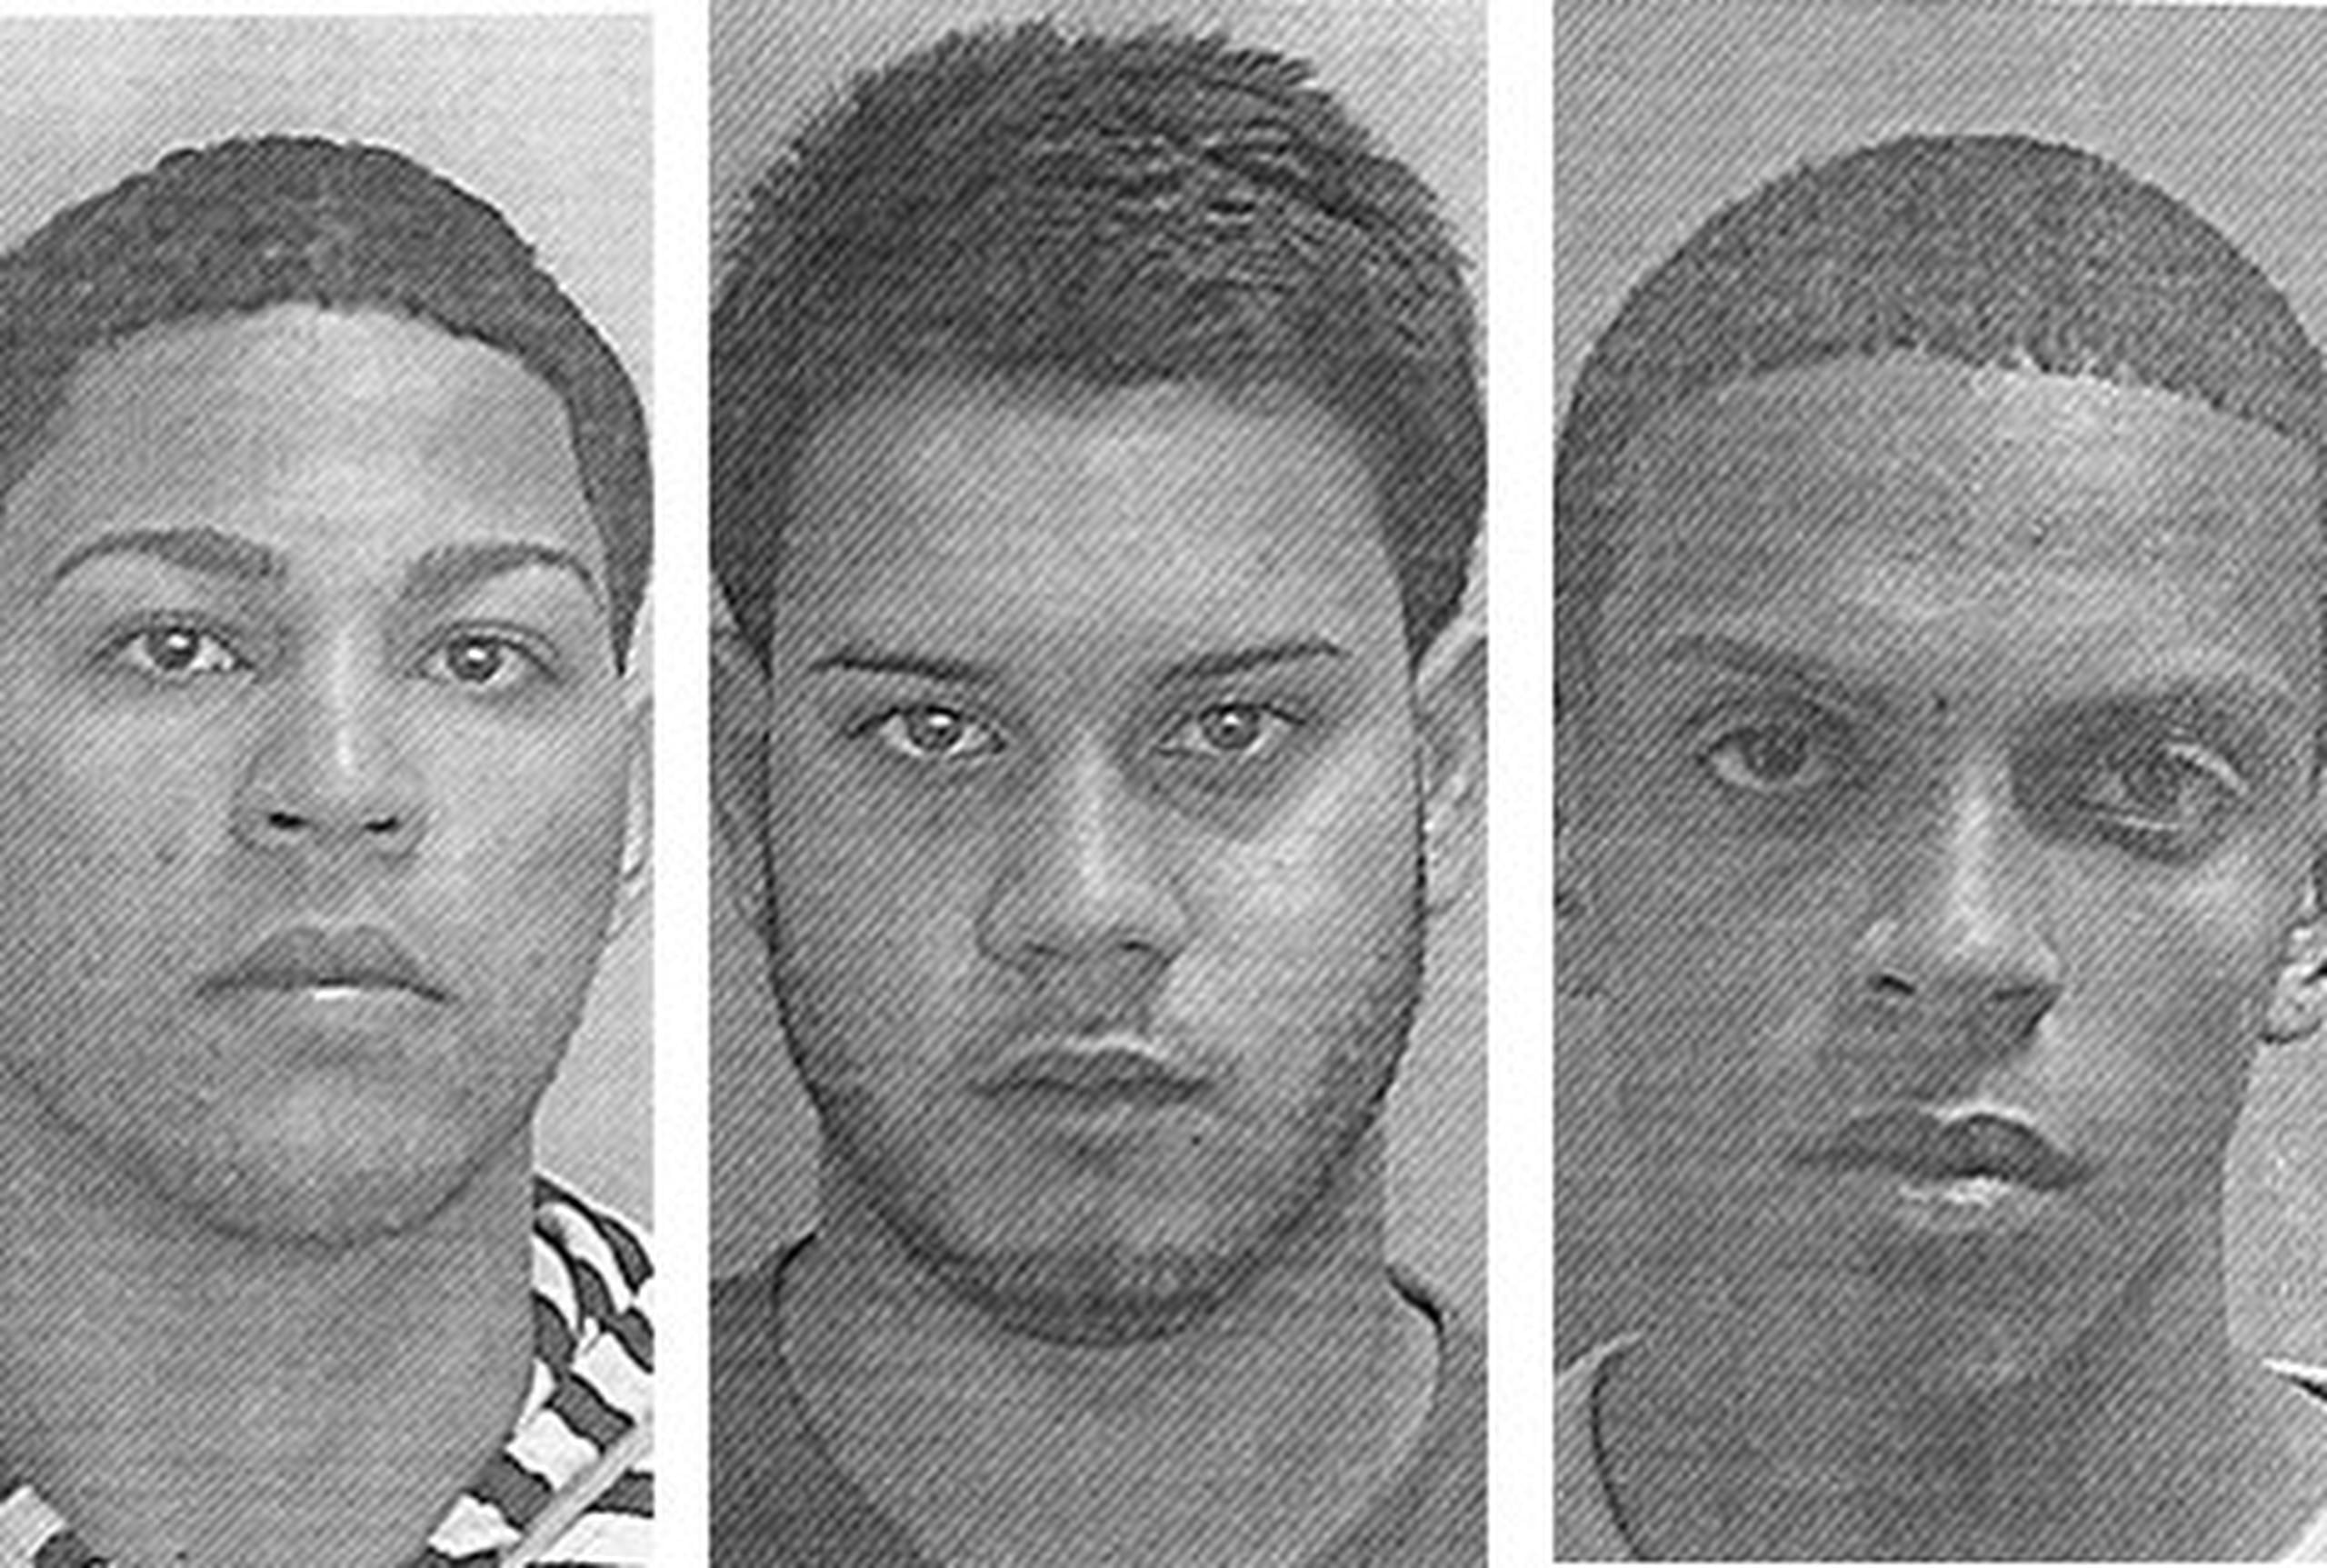 Ricardo "Ricard" Rivera Rivera, Anthony Espada Correa y Christopher Gibson Santiago fueron arrestados por presuntamente estar vinculados a la muerte del hijo de un abogado. (Suministrada)